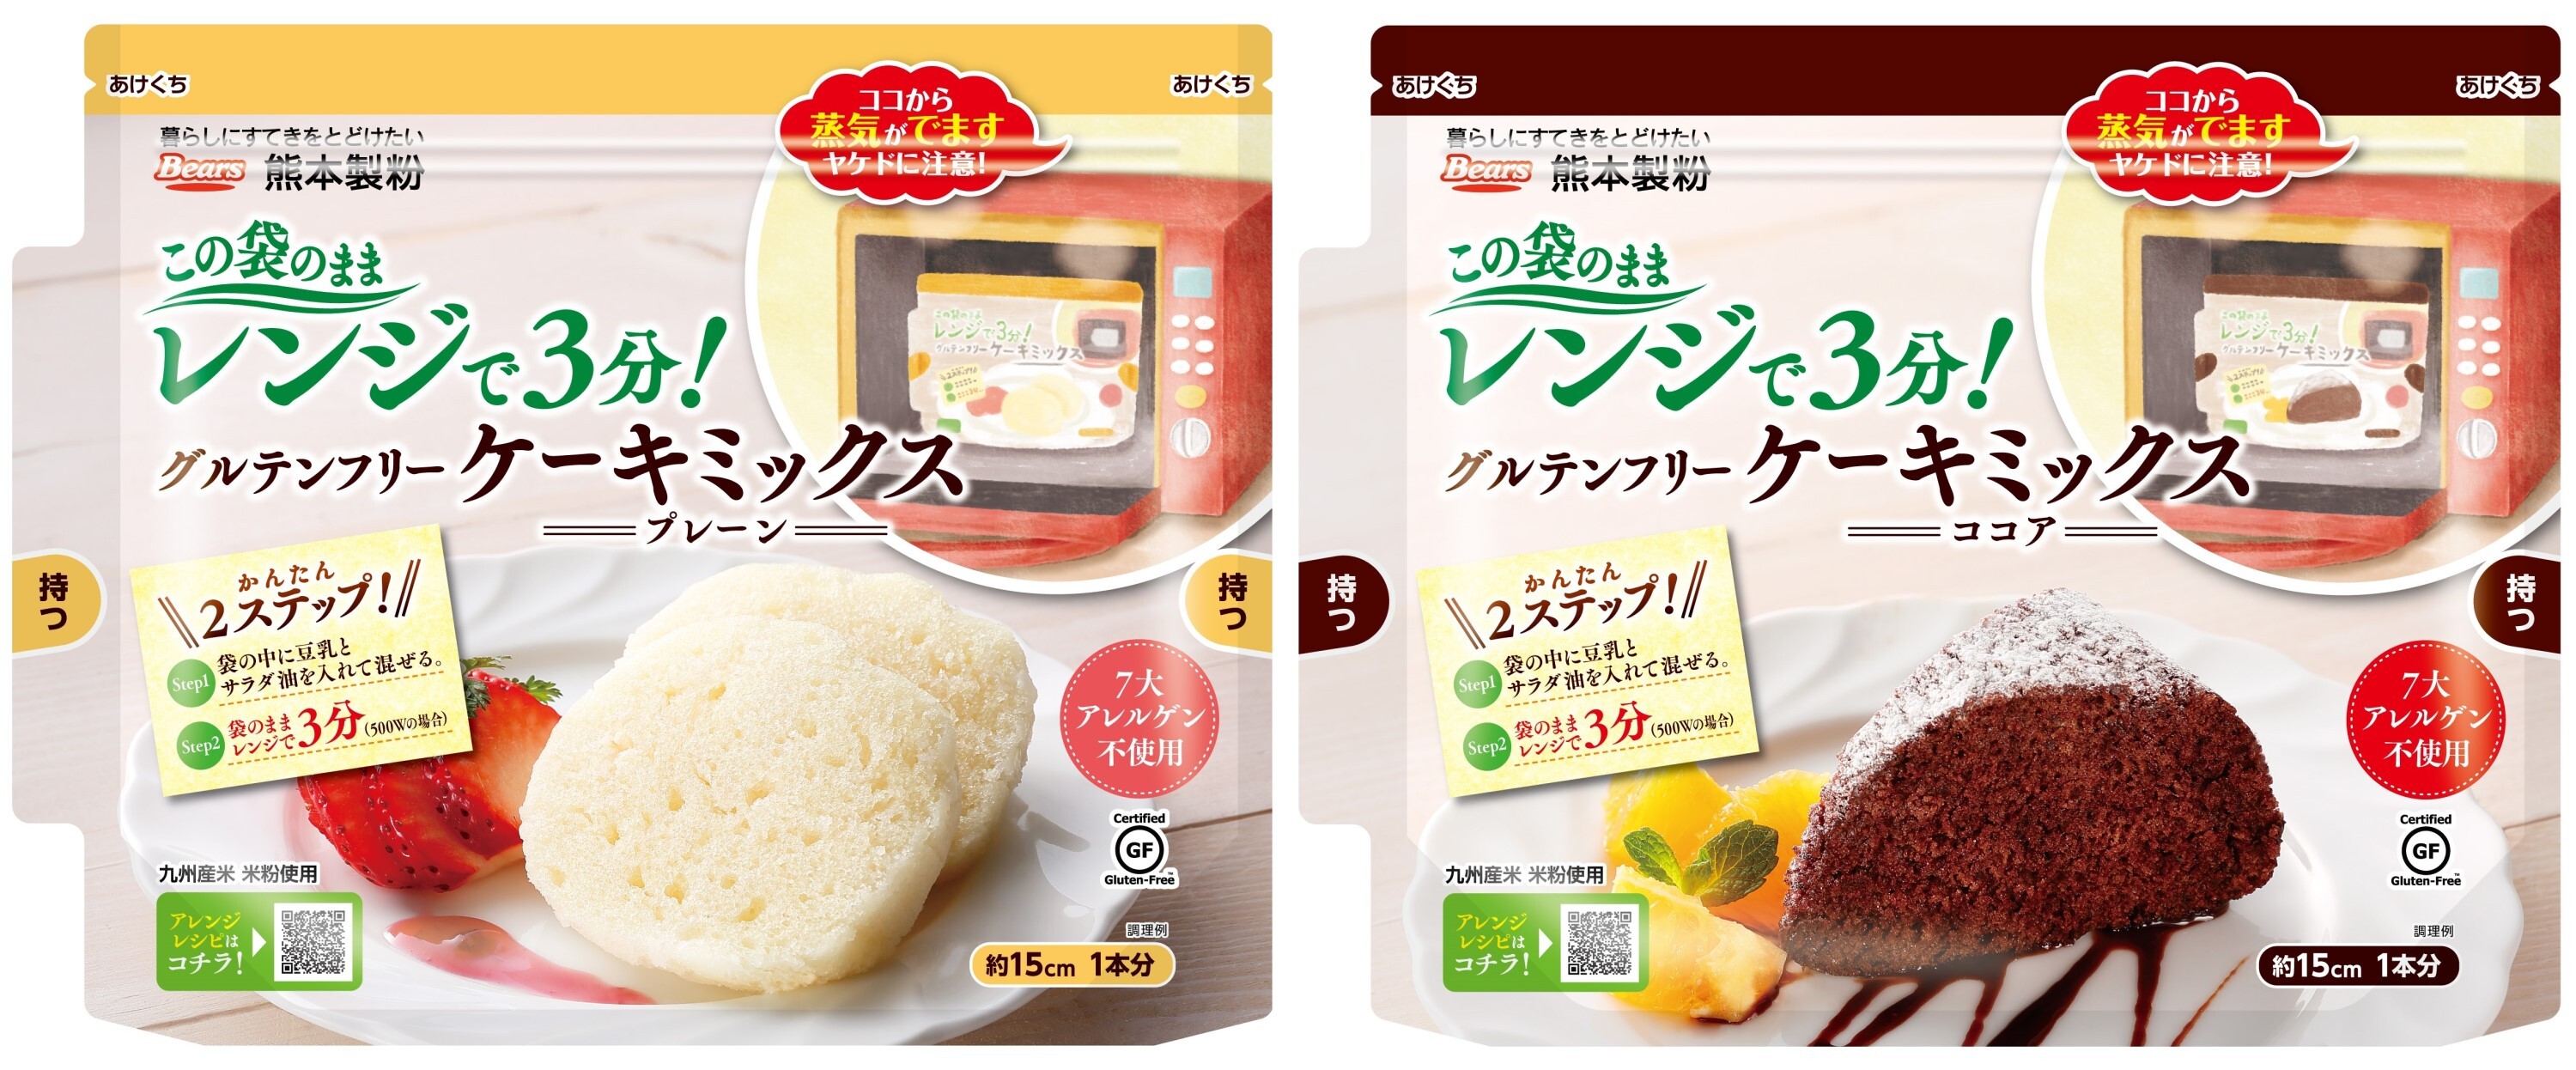 グルテンフリーケーキミックス パッケージをリニューアルし 商品特長が分かりやすくなりました 熊本製粉株式会社のプレスリリース